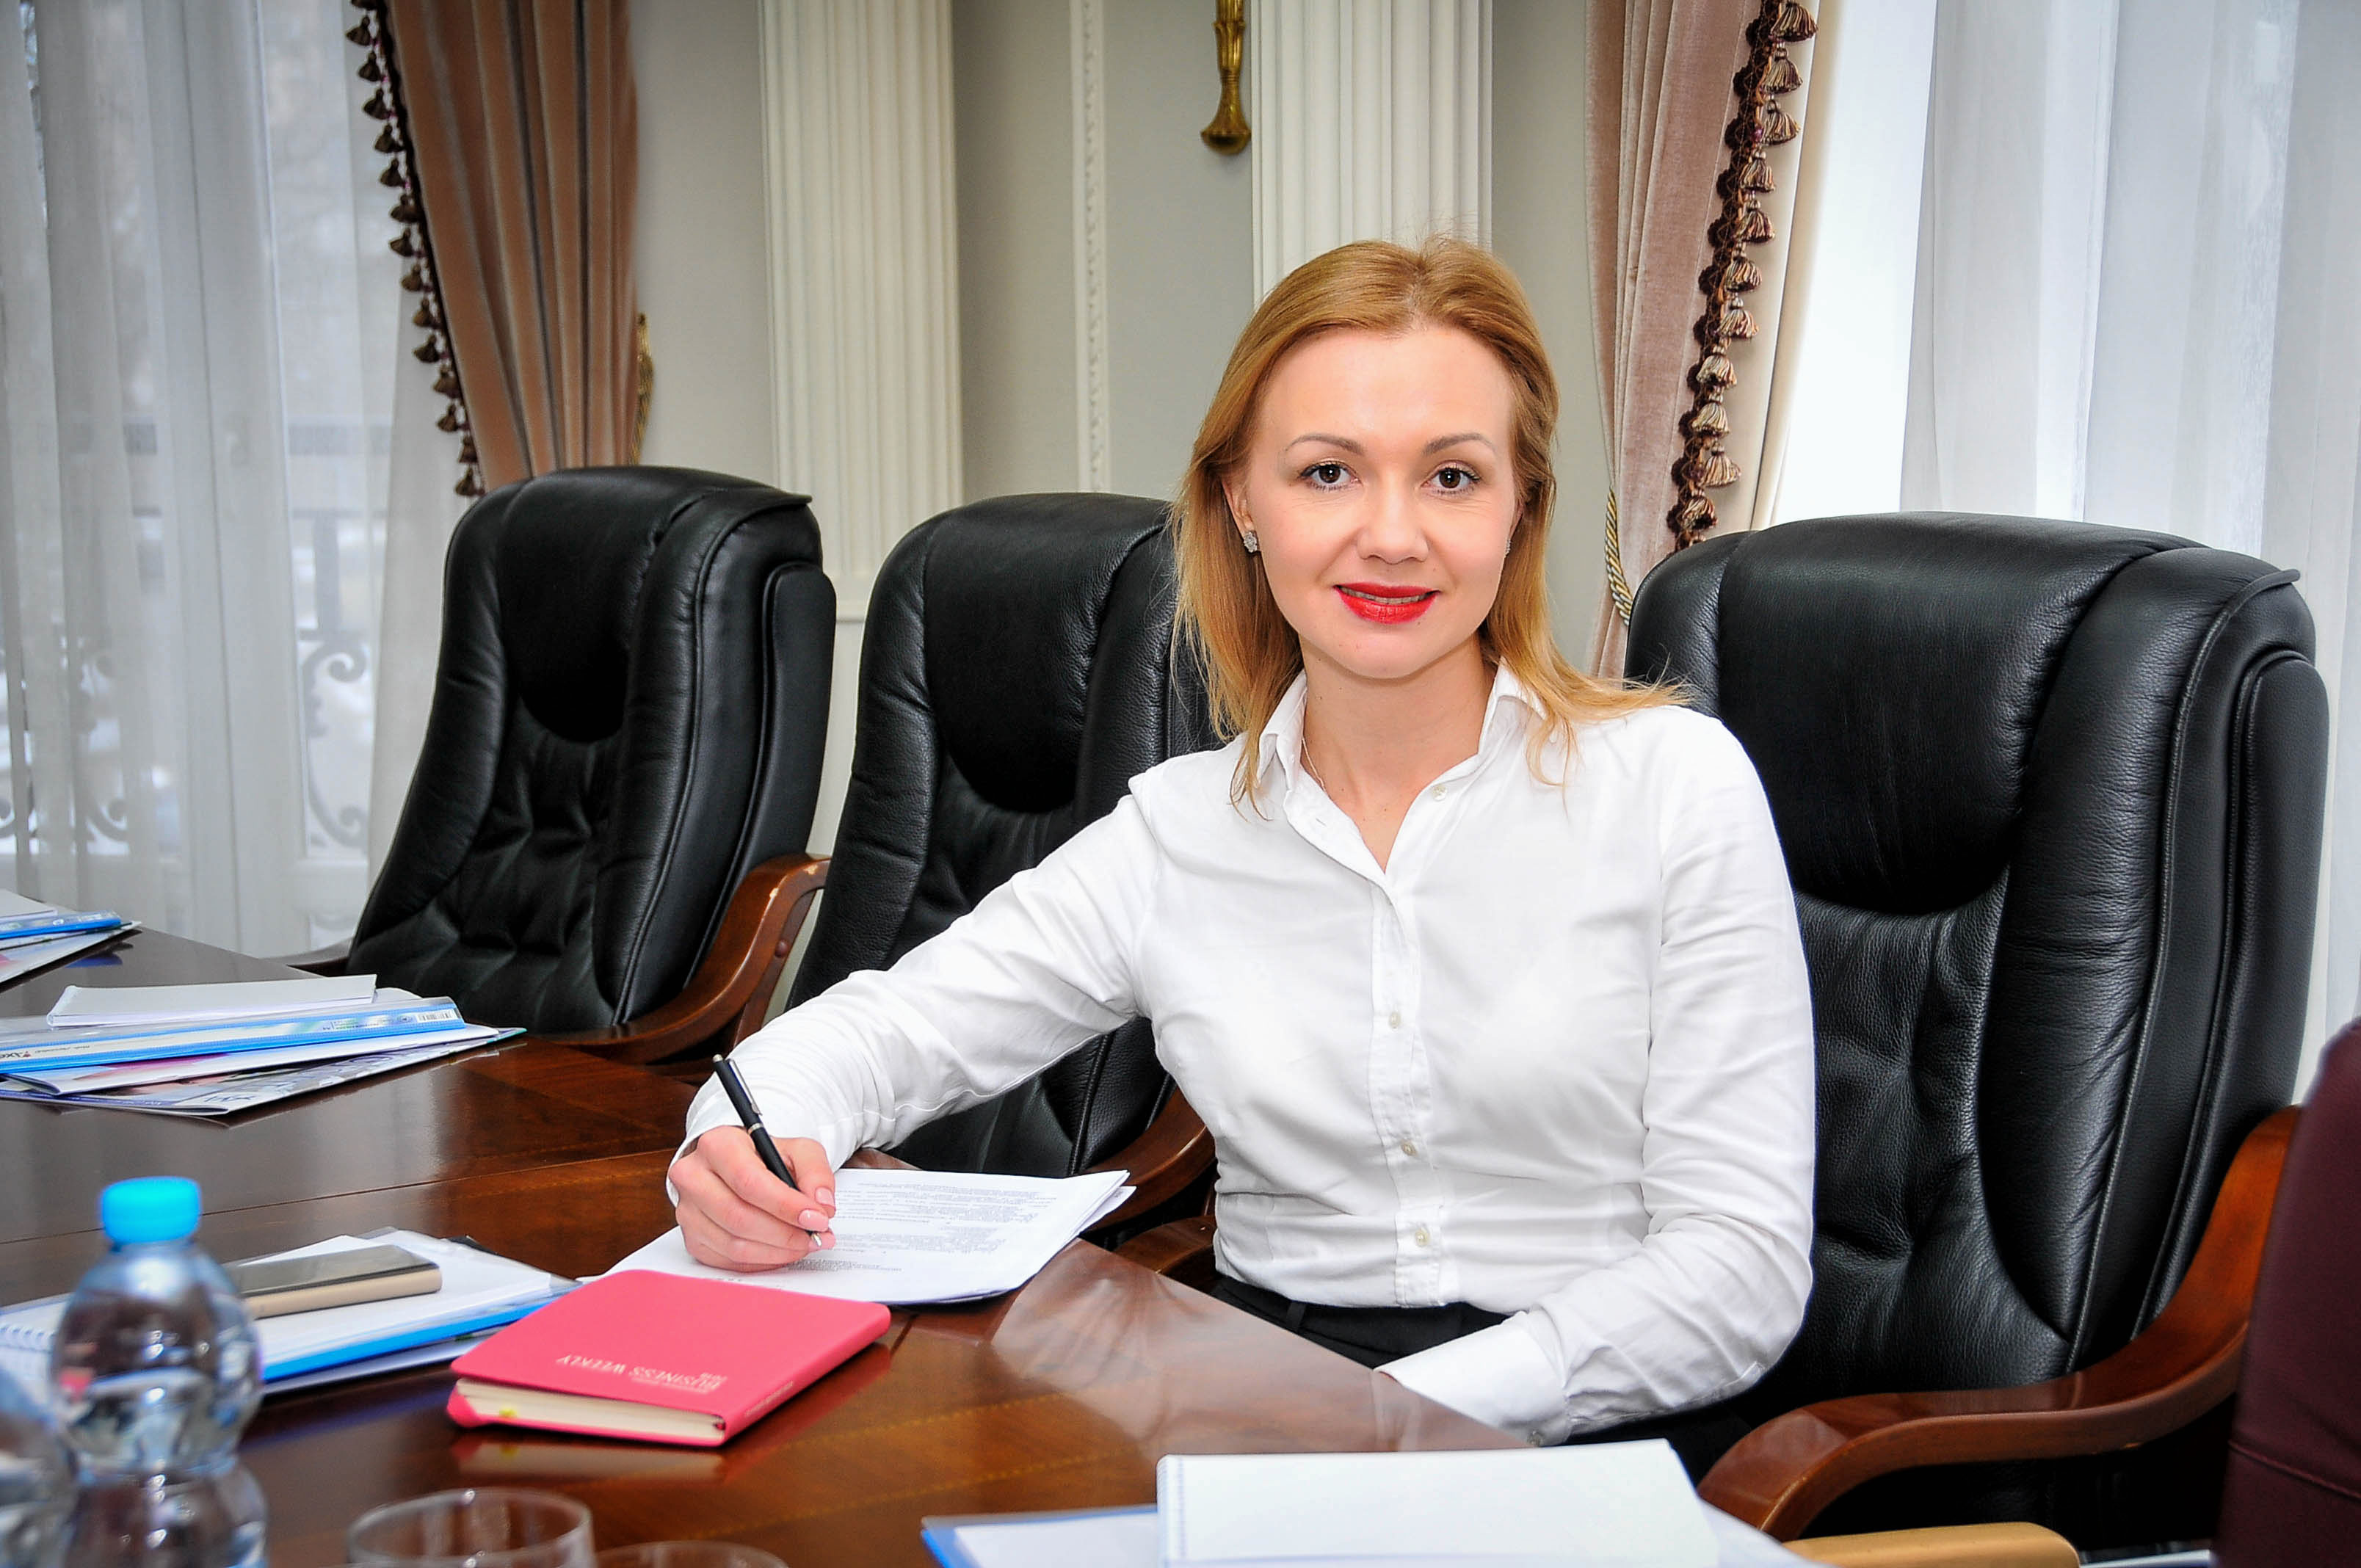 Брачные контракты становятся более популярными, в прошлом году в Украине заключили почти 3 тысячи — юрист